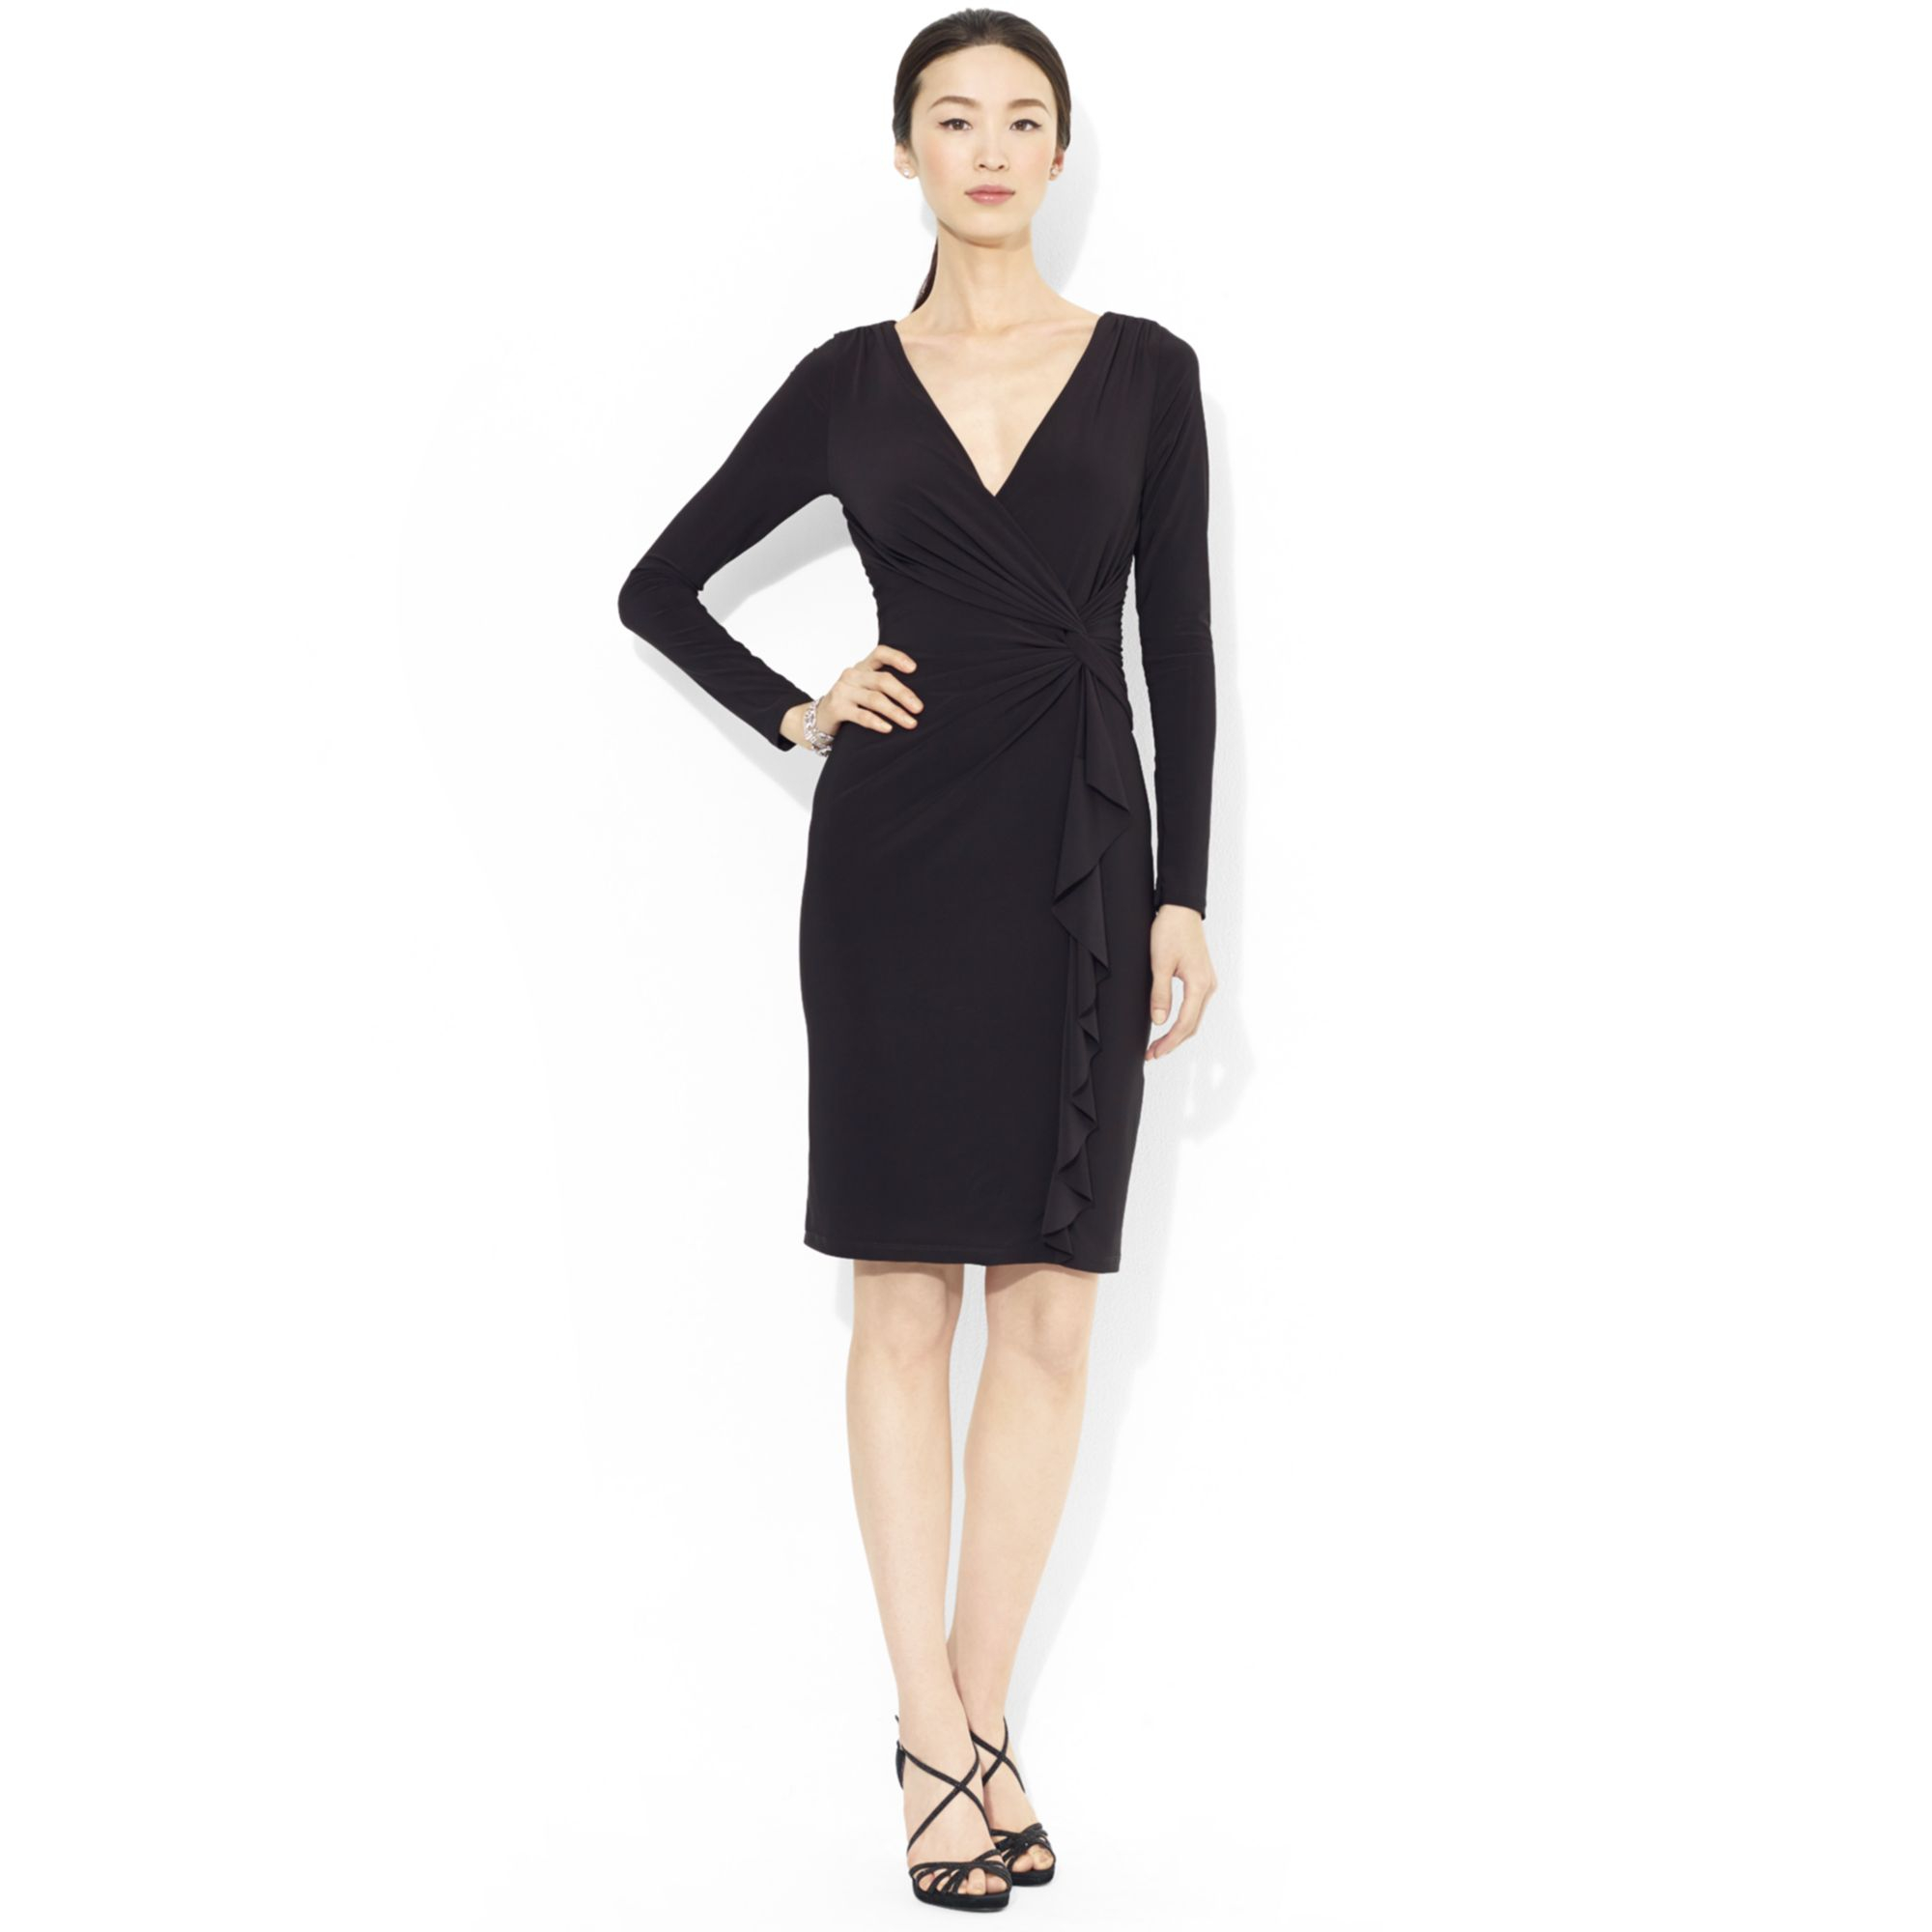 Lauren by Ralph Lauren Long-Sleeve Ruffled Jersey Dress in Black | Lyst